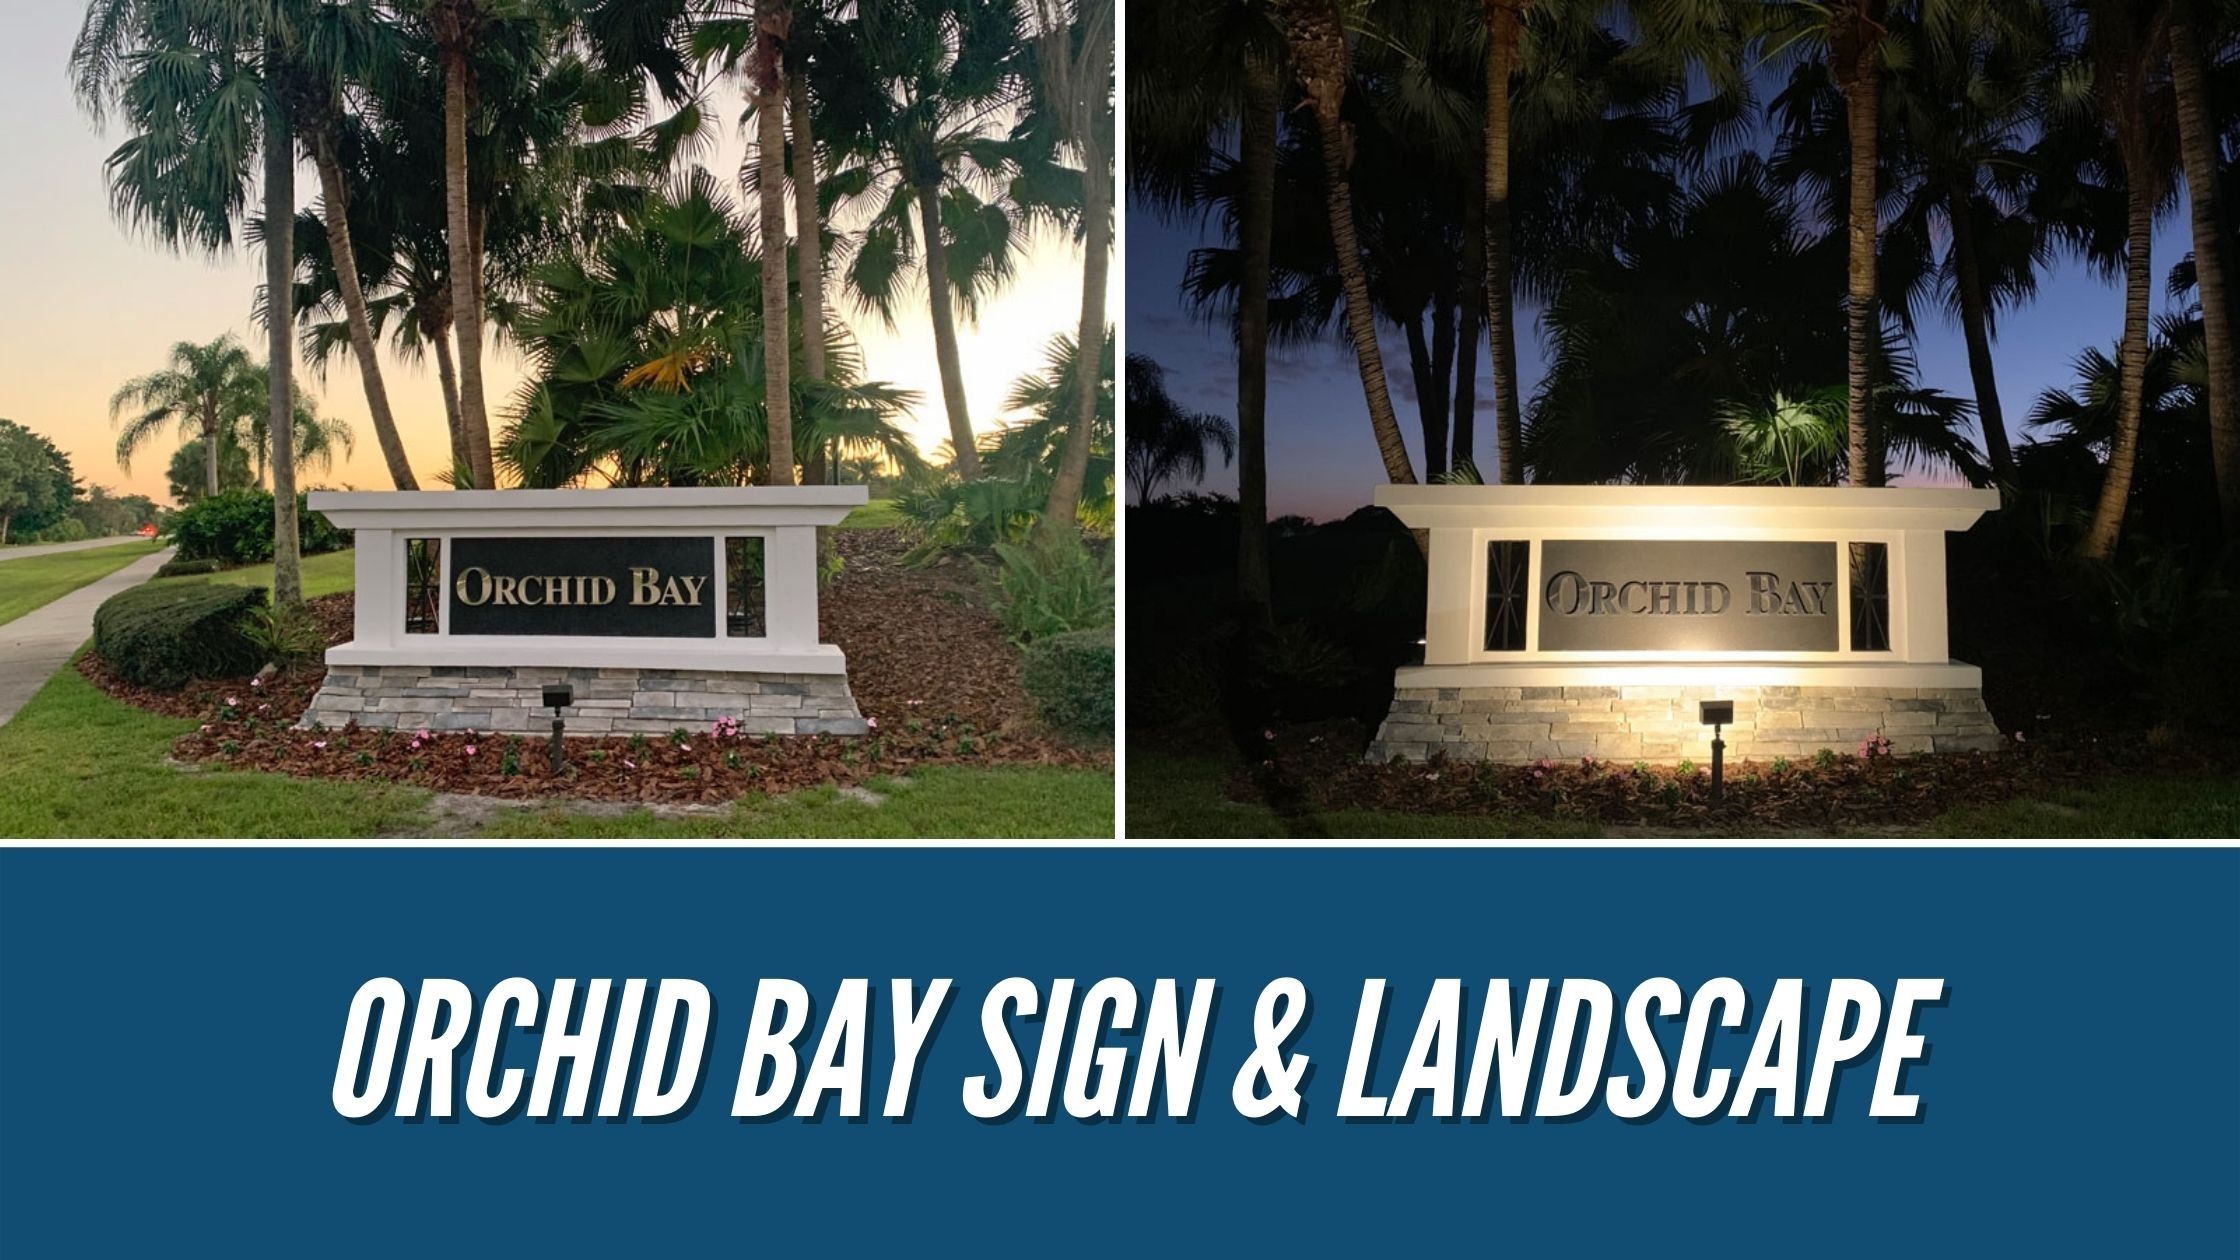 Orchid Bay Sign & Landscape